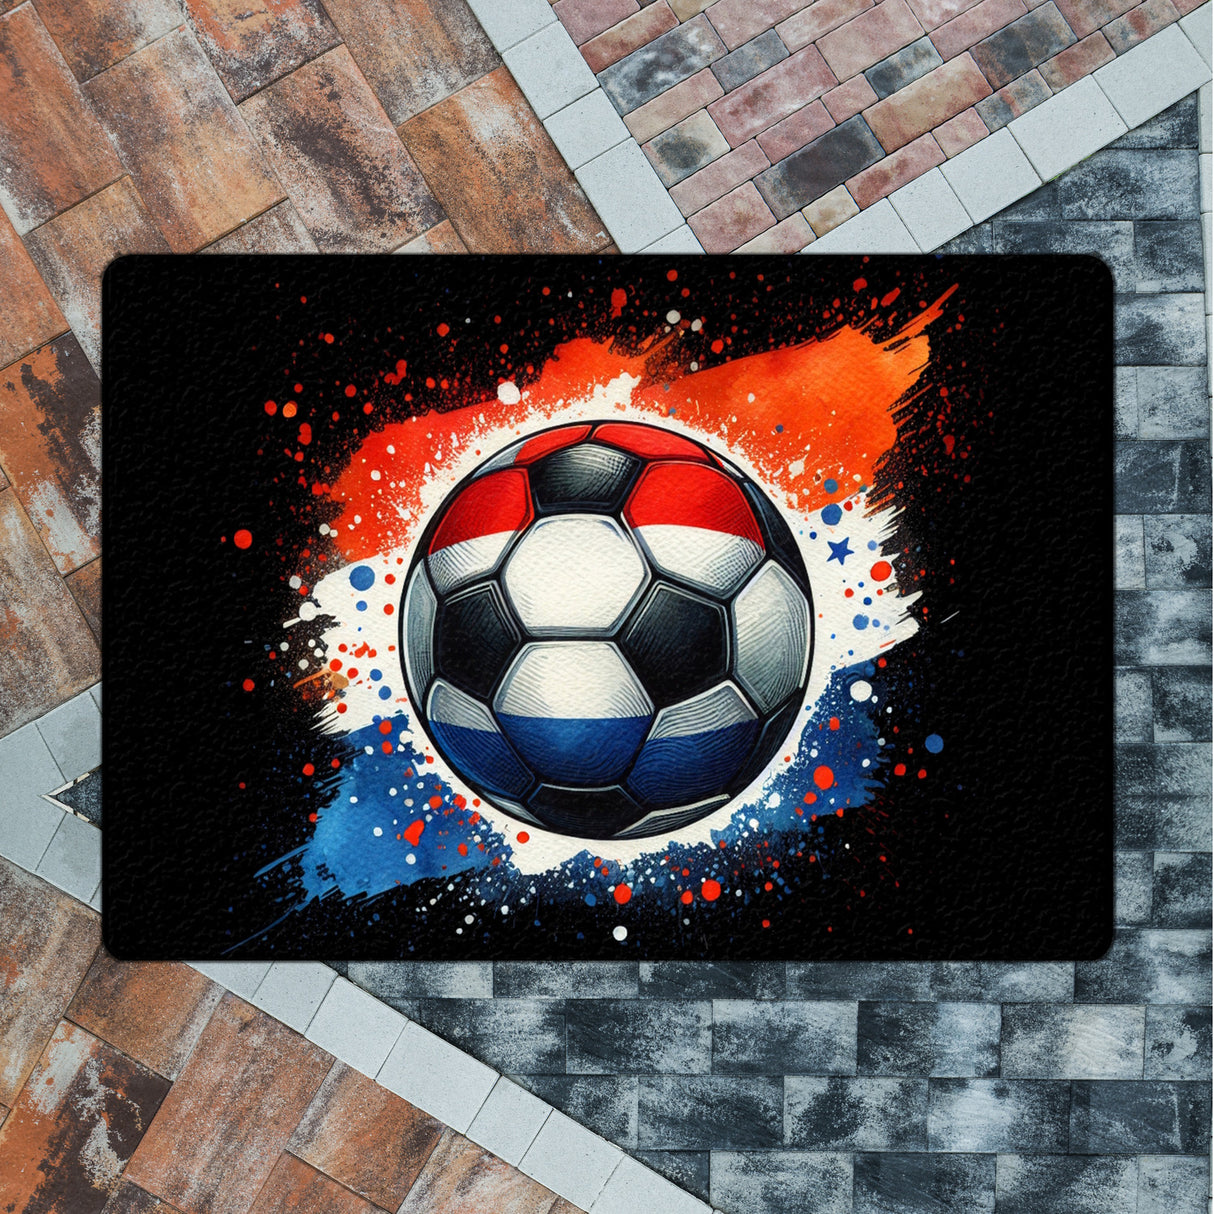 Fußball Niederlande Flagge Fußmatte in 35x50 cm ohne Rand